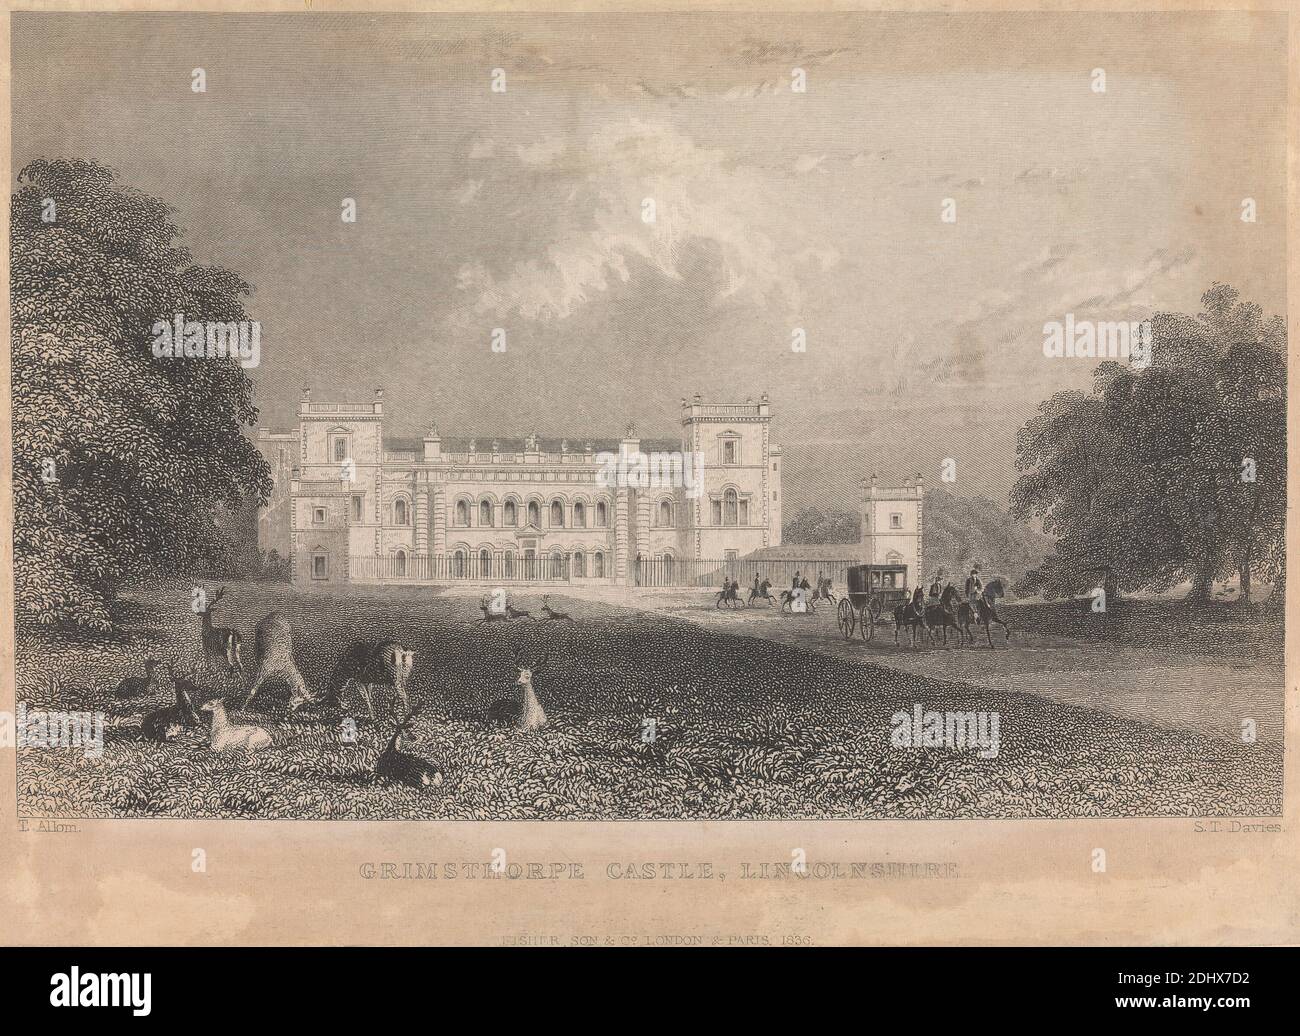 Grims Thorpe Castle, Linolnshire (pubblicato da Fisher Son & Company) (Volume due), artista sconosciuto, ( S. T. Davis ), dopo Thomas Allom, 1804–1872, British, 1836 Foto Stock